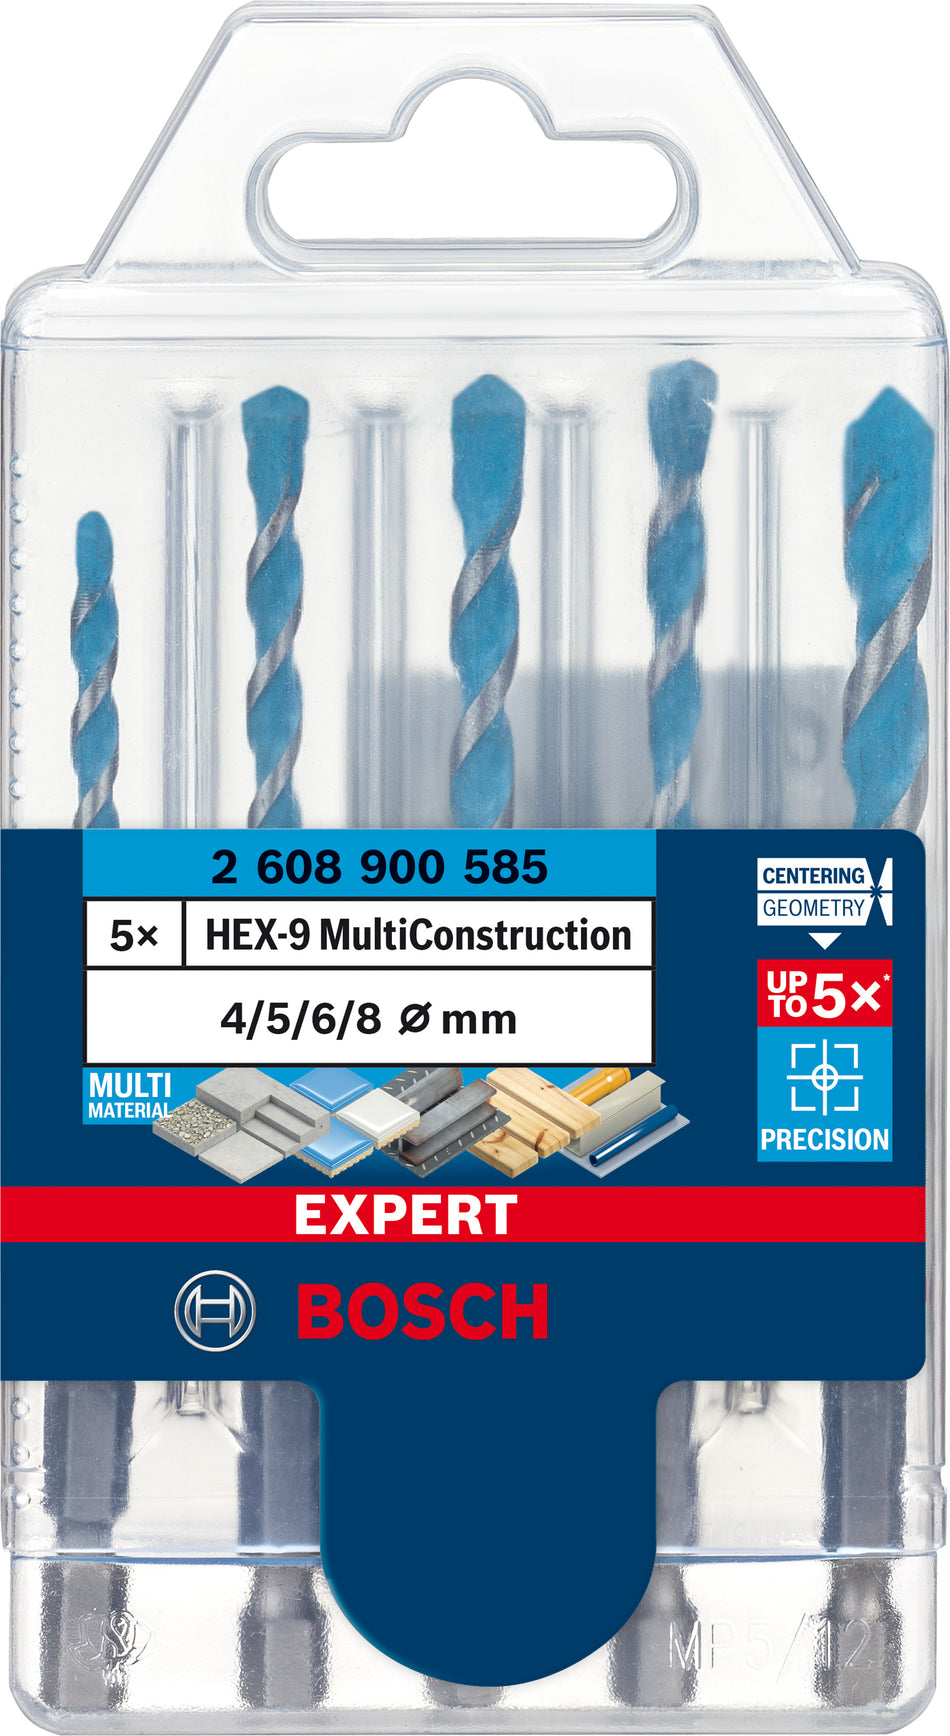 Bosch EXPERT HEX 9 MultiConstruction Drill Bit Set 4 5 6 6 8 mm 5 pc 2608900585